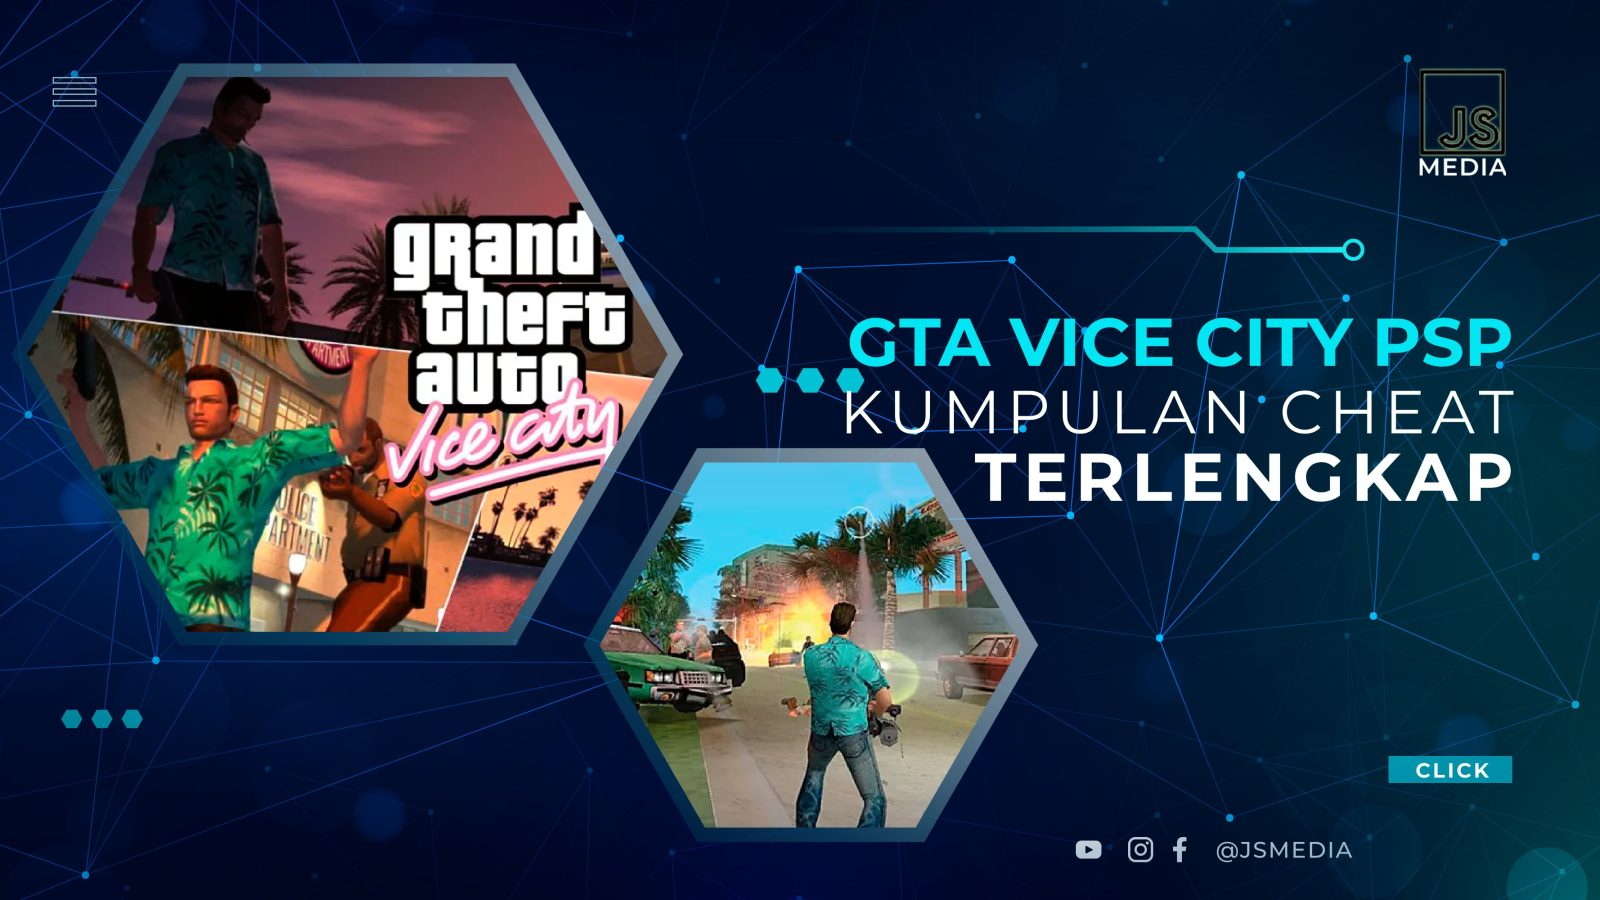 Kumpulan Cheat GTA Vice City PSP Lengkap